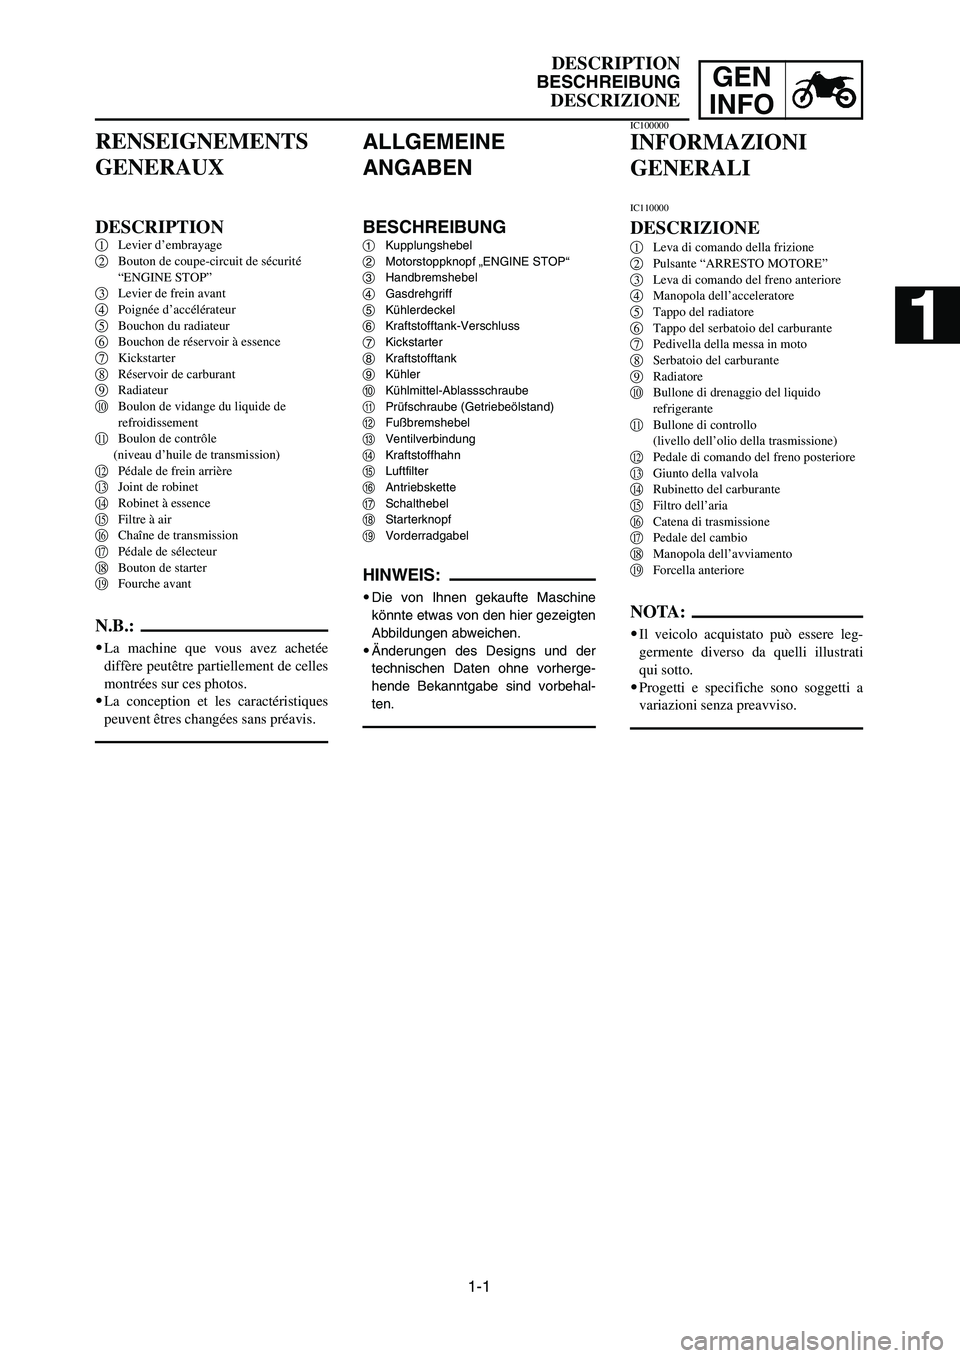 YAMAHA YZ125LC 2007  Owners Manual 1-1
GEN
INFO
DESCRIPTION
BESCHREIBUNG
DESCRIZIONE
ALLGEMEINE
ANGABEN
BESCHREIBUNG1Kupplungshebel
2Motorstoppknopf „ENGINE STOP“
3Handbremshebel
4Gasdrehgriff
5Kühlerdeckel
6Kraftstofftank-Verschl